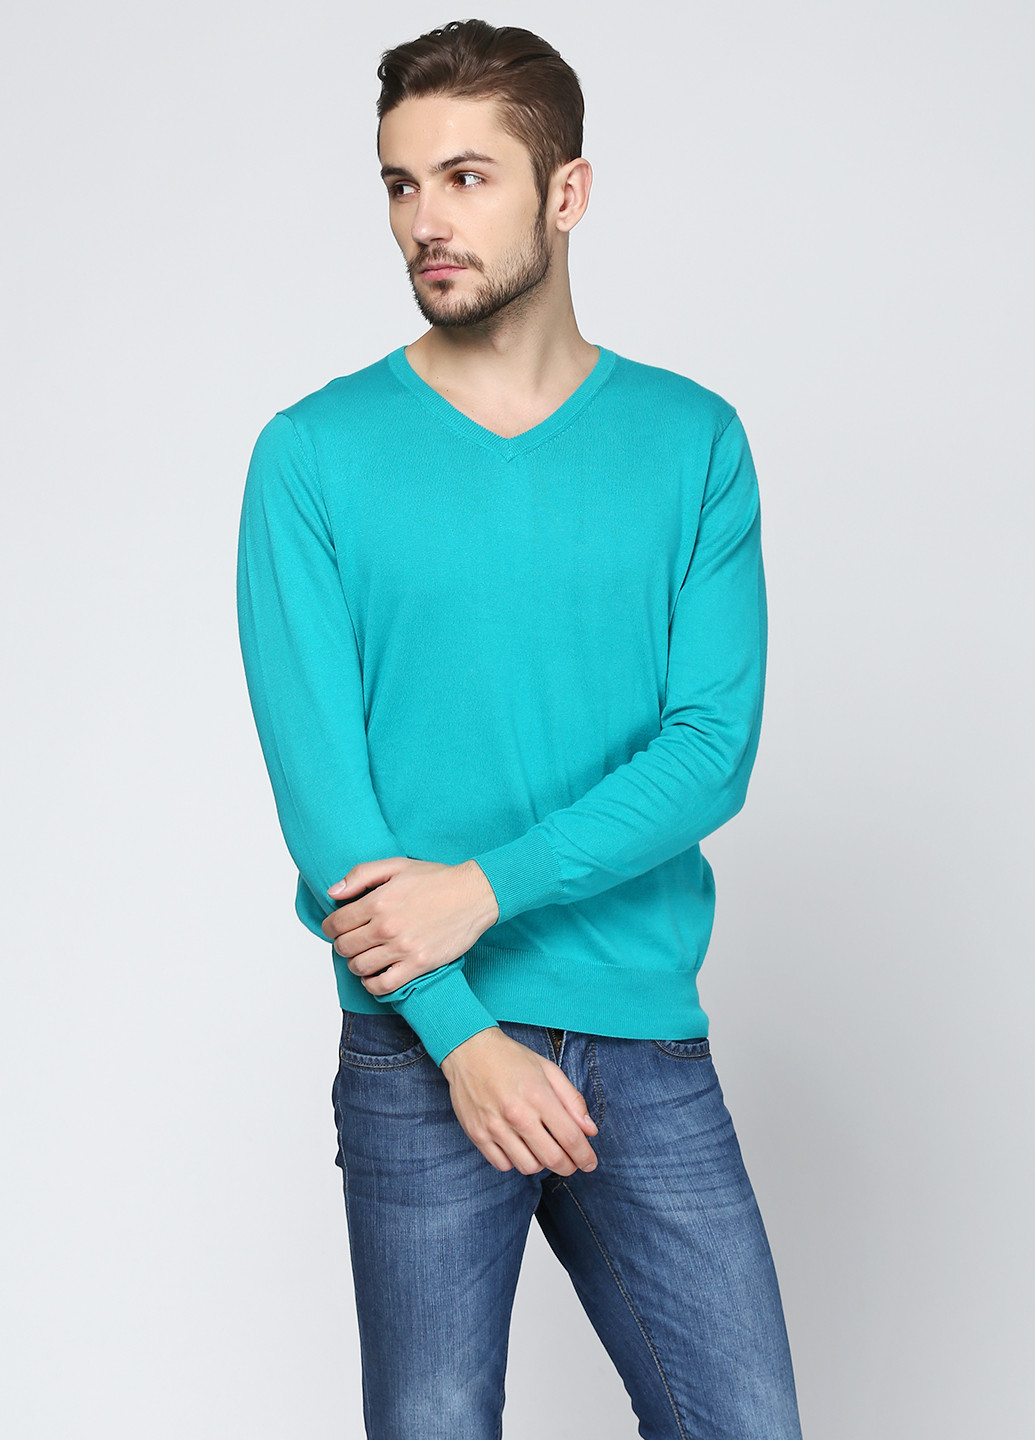 Бирюзовый демисезонный пуловер пуловер Cashmere